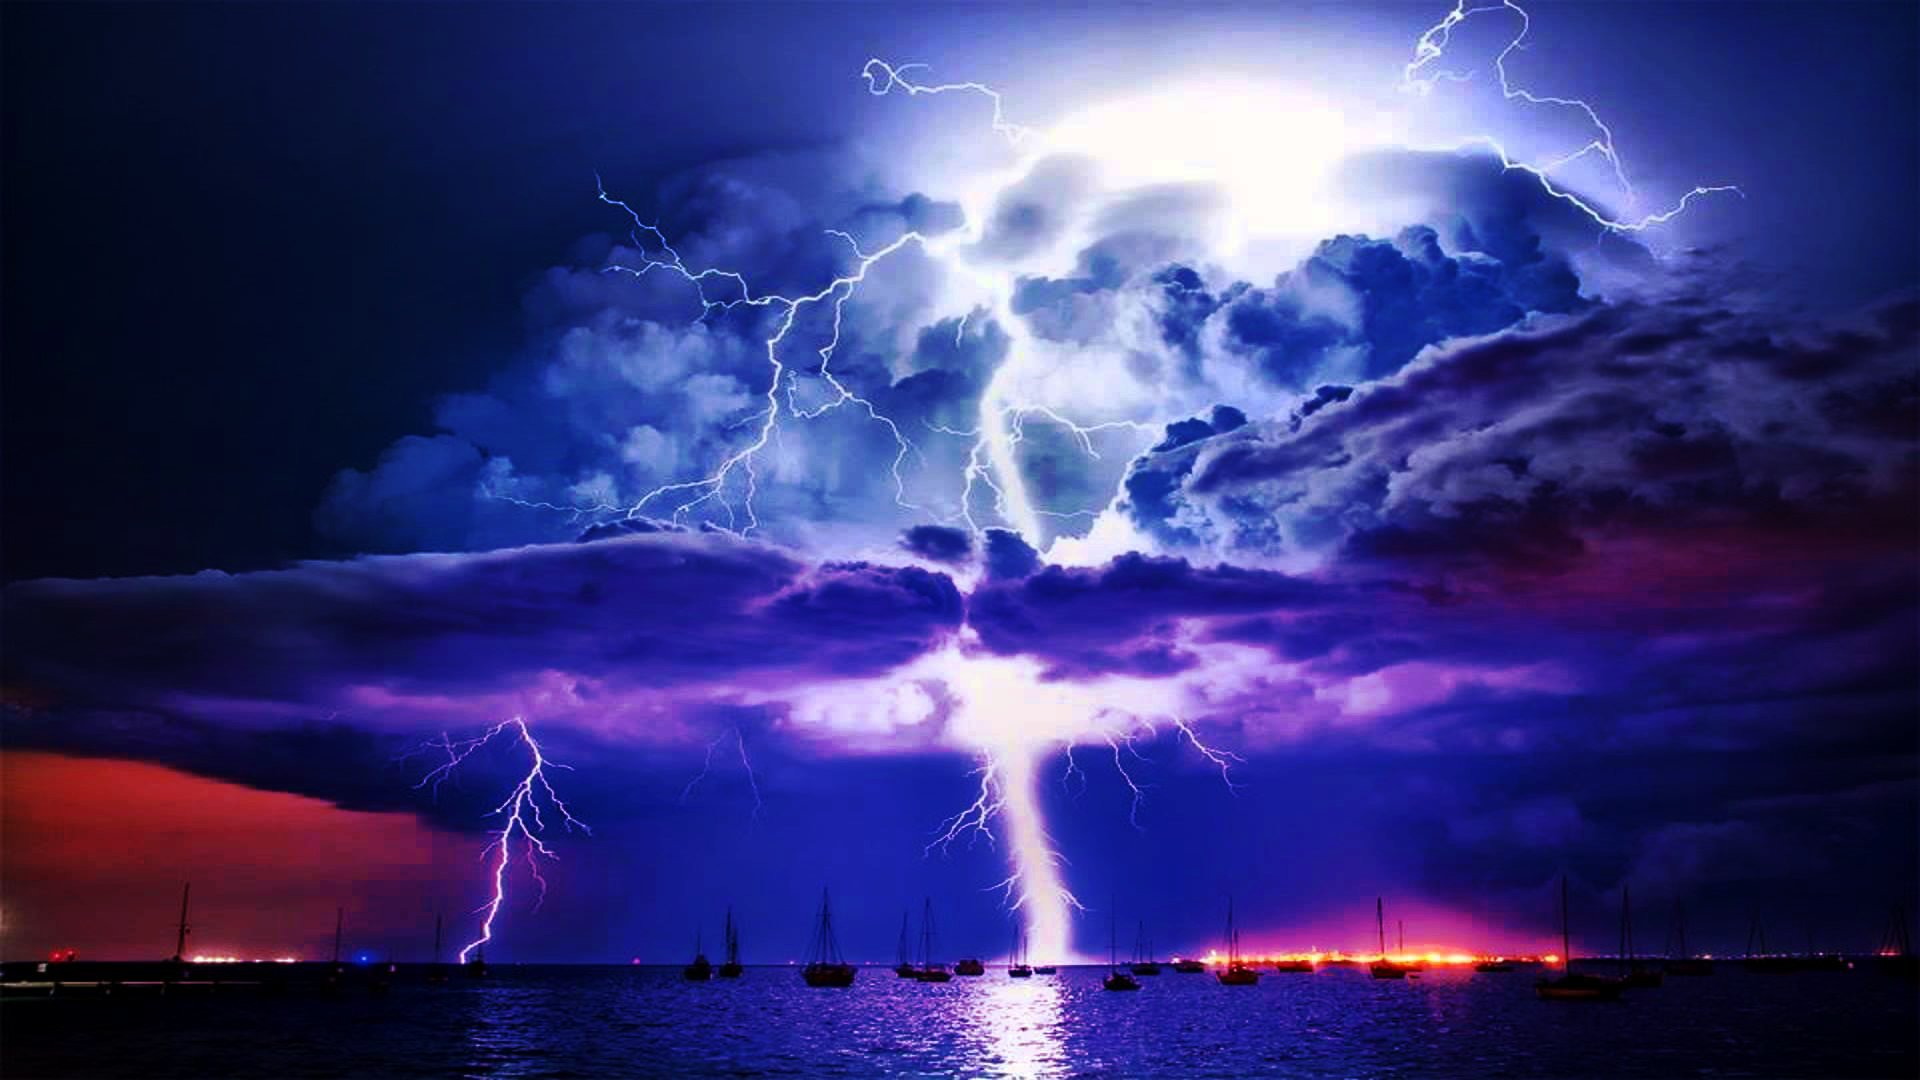 Εικόνες από ένα εφιαλτικό μέλλον περιγράφουν επιστήμονες: Δυνατές καταιγίδες, κυκλώνες & άλλα ακραία καιρικά φαινόμενα!